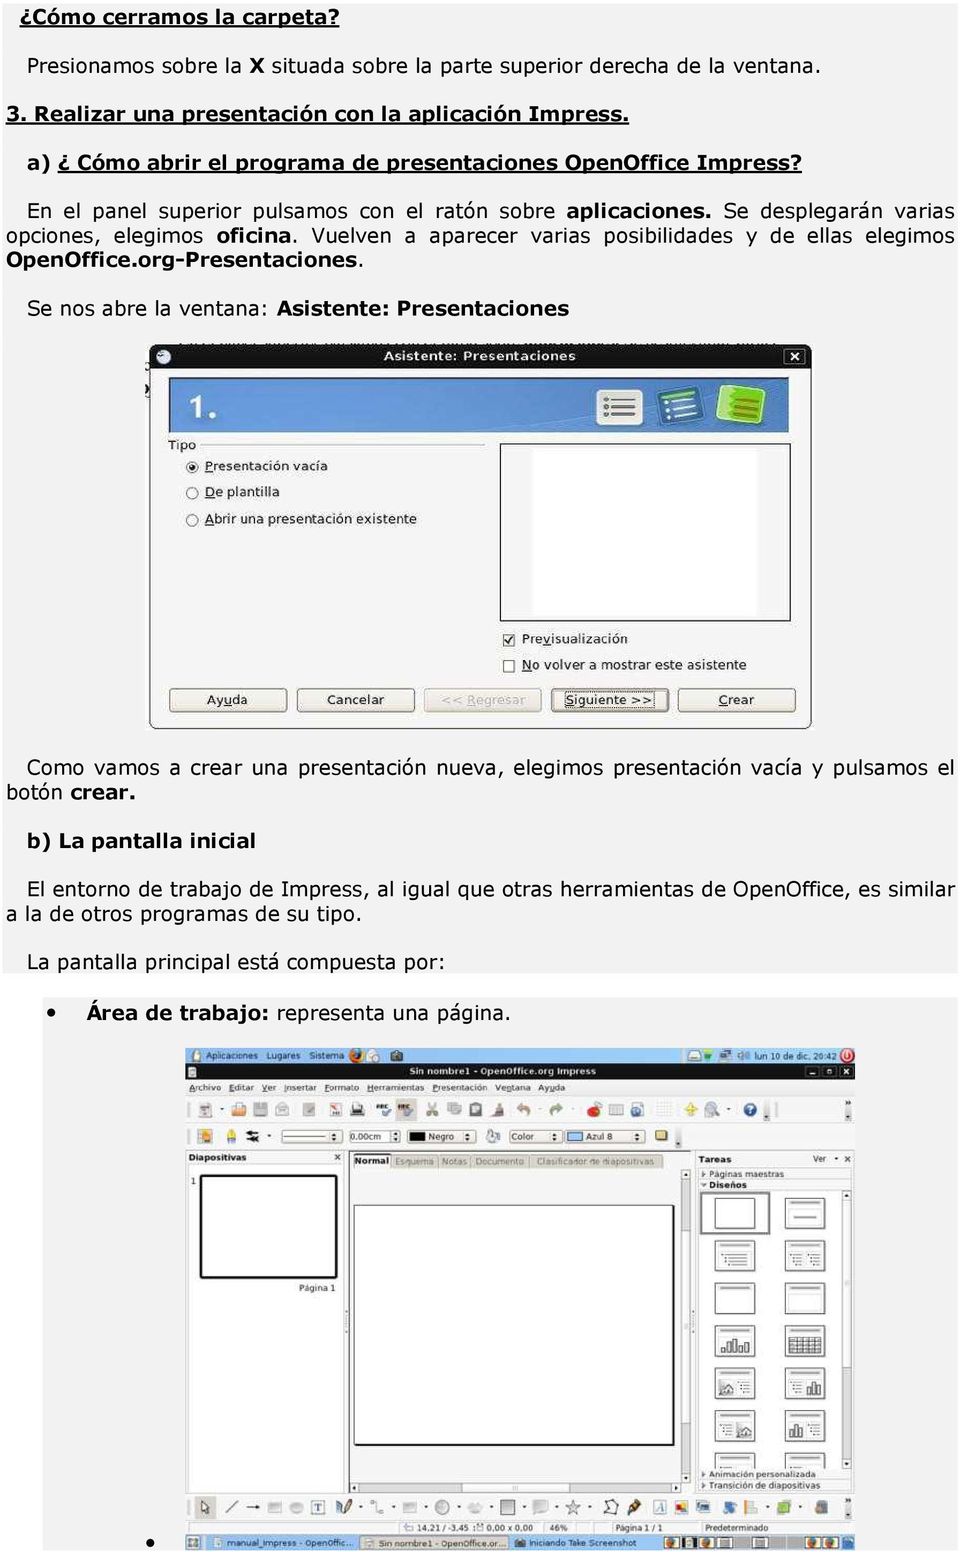 Vuelven a aparecer varias posibilidades y de ellas elegimos OpenOffice.org-Presentaciones.